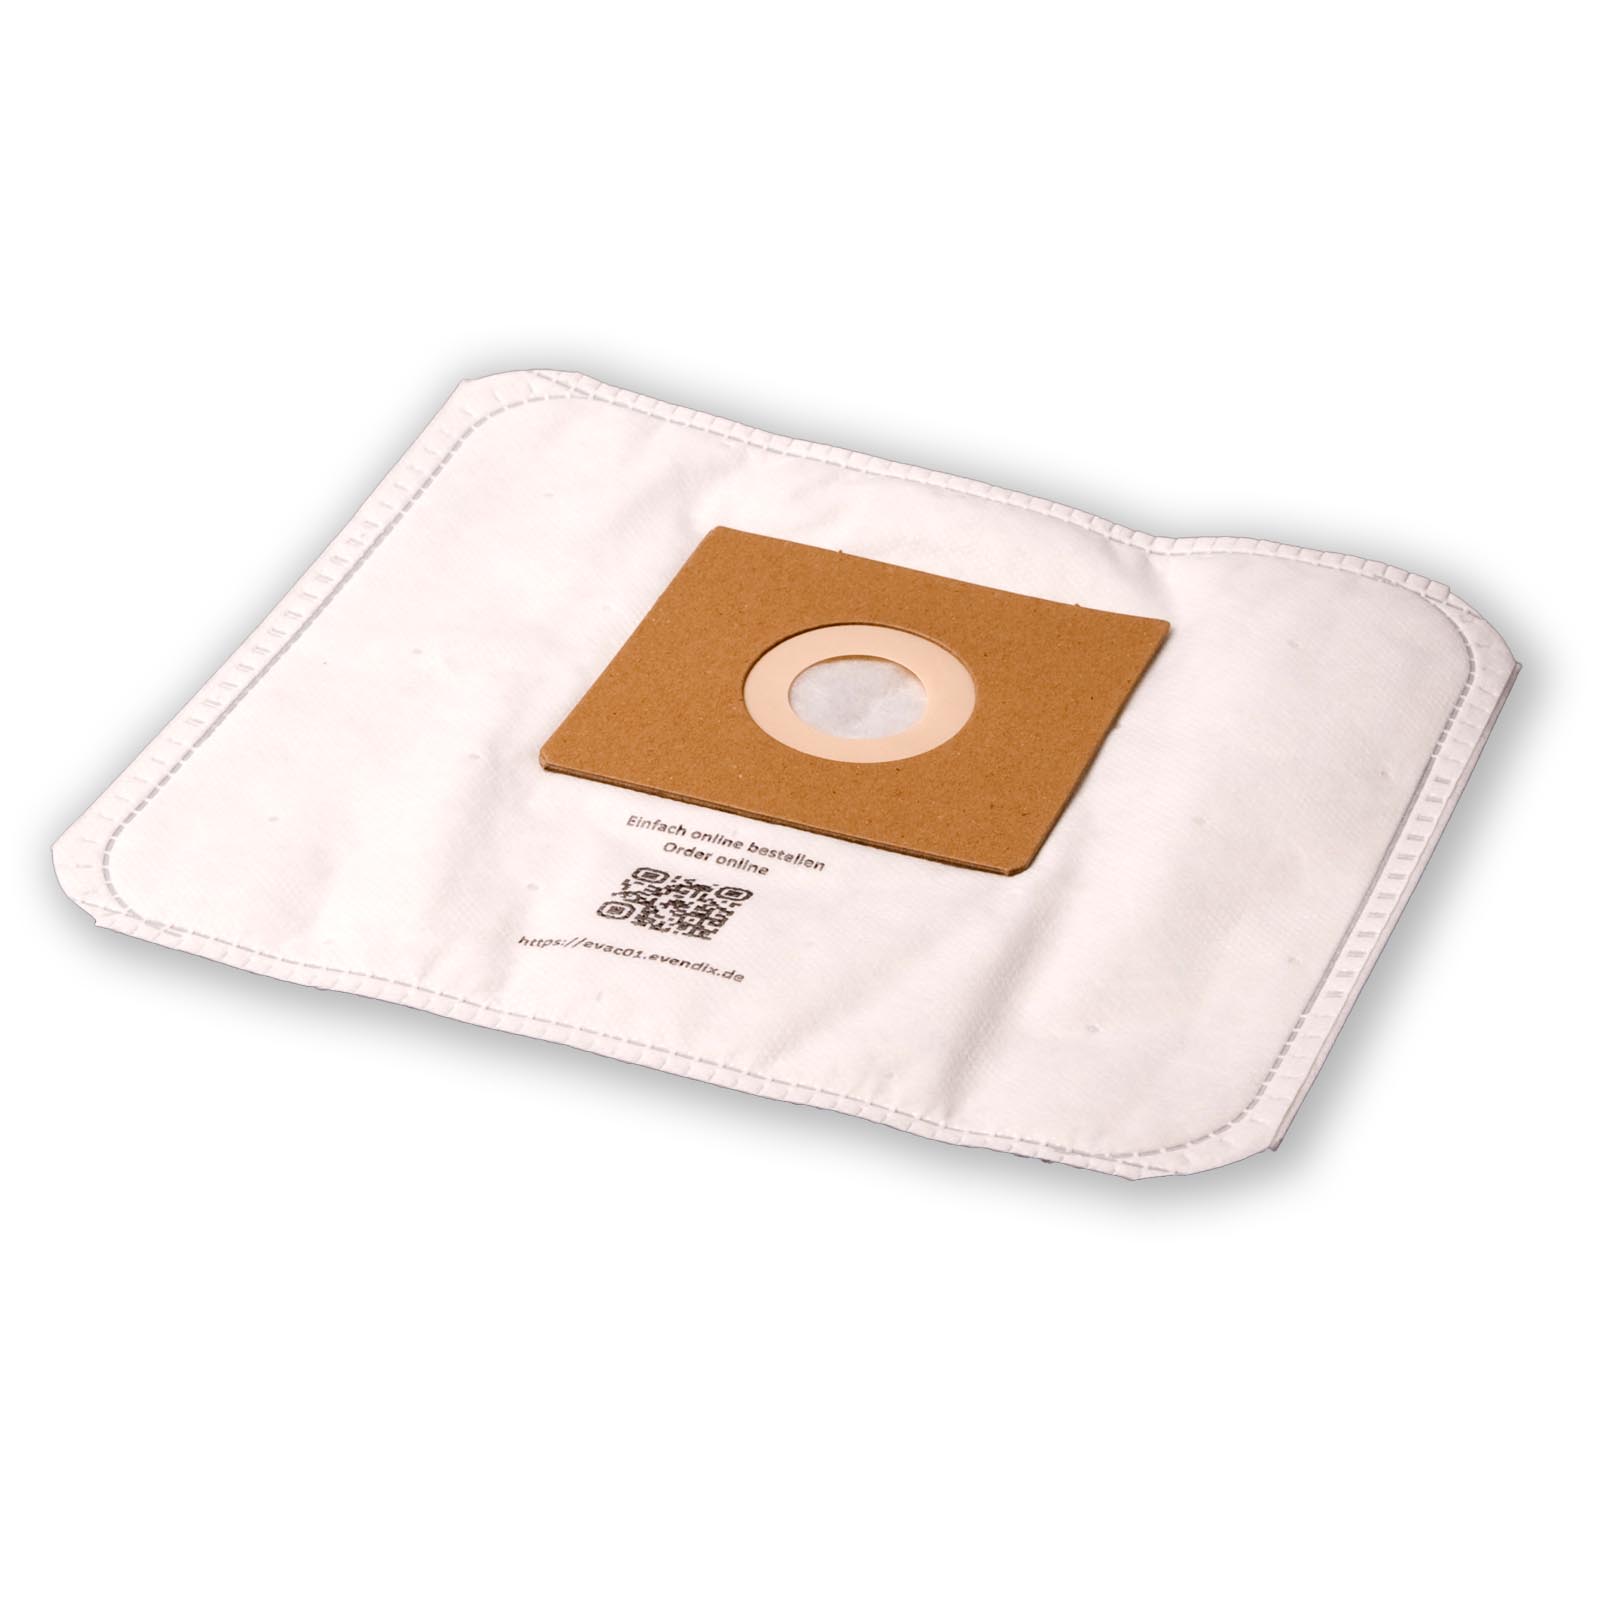 10 Staubsaugerbeutel kompatibel mit GRUNDIG Typ E - Hygiene Bag, 10 Staubbeutel + 1 Mikro-Filter ähnlich Original Staubsaugerbeutel GRUNDIG Typ E - Hygiene Bag